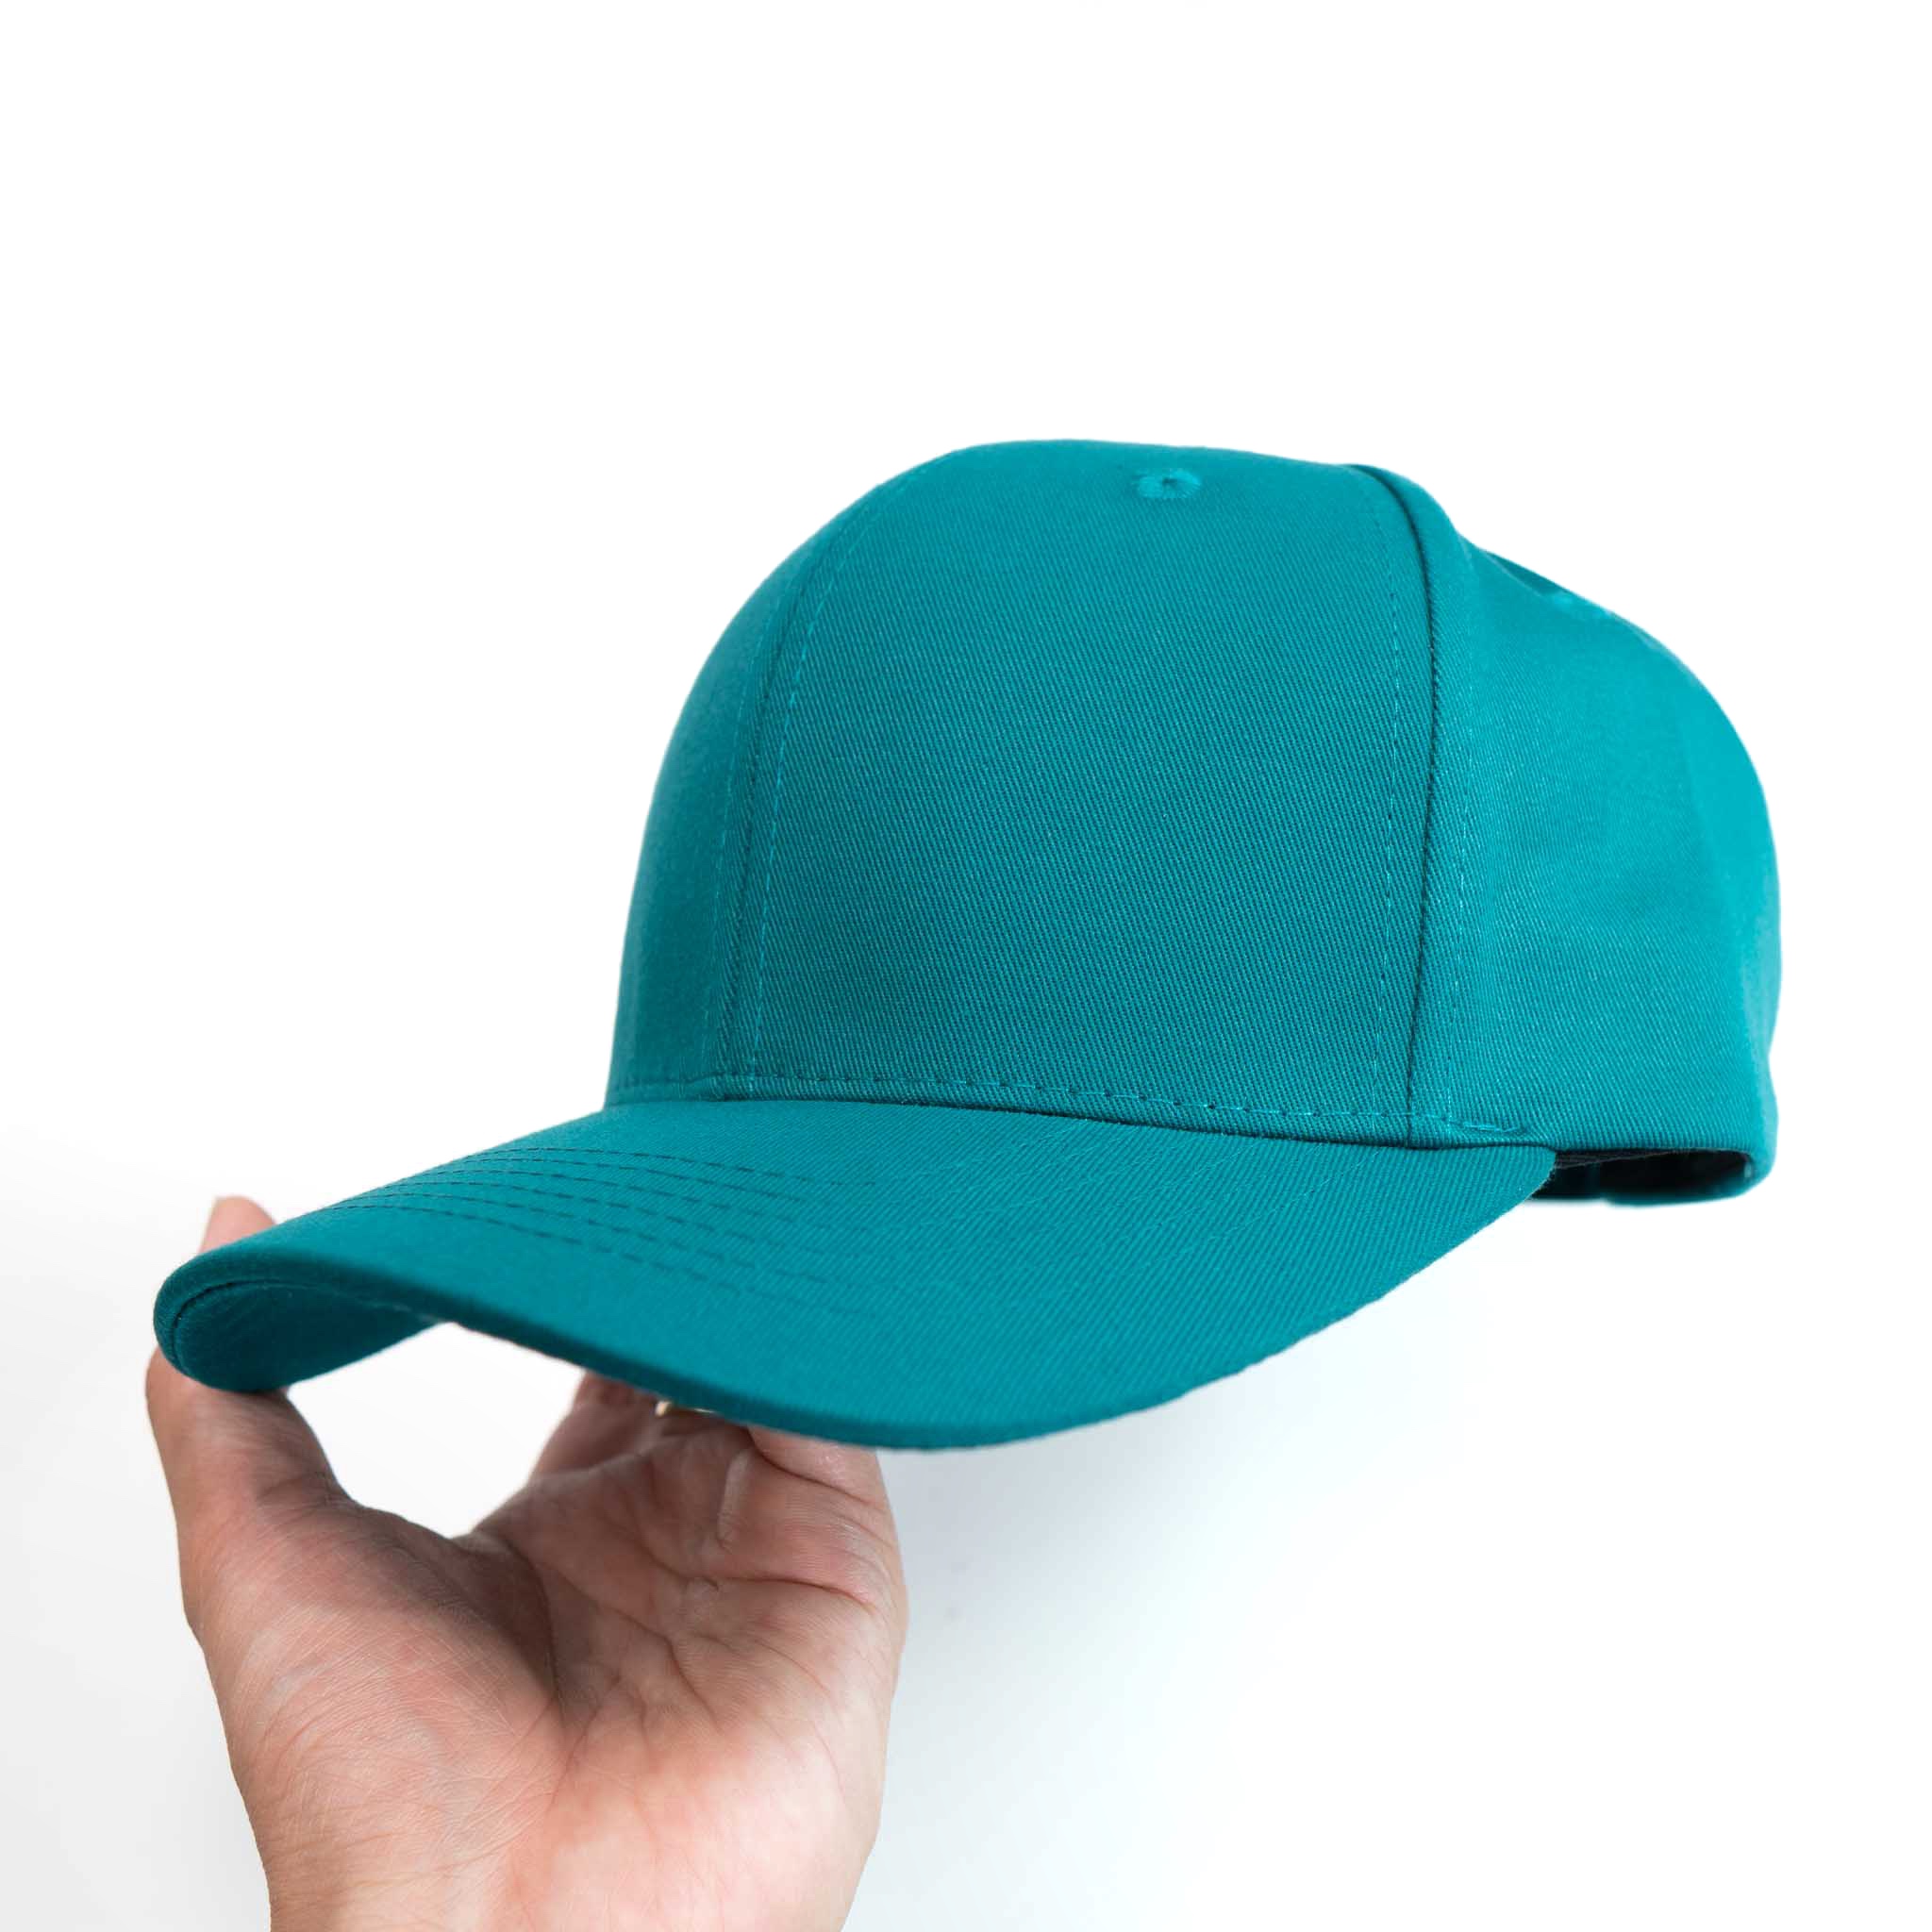 Nón lưỡi trai vành cong Trơn Xanh Lam quai khoá dây Brand One Hat